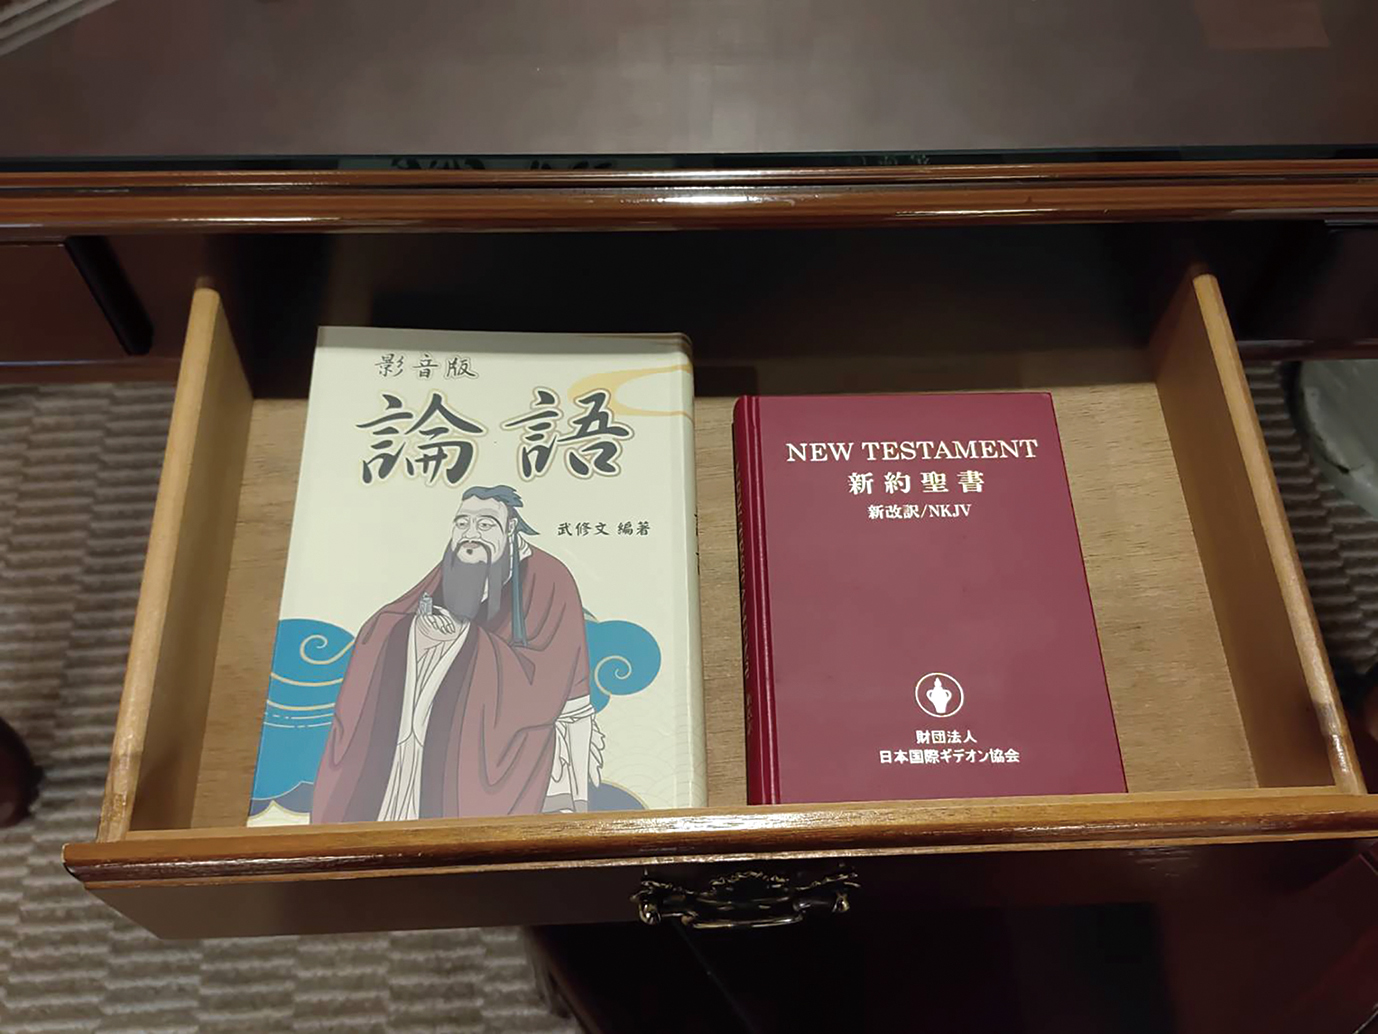 徐銀樹號召旅館同業客房內擺放《論語》運動